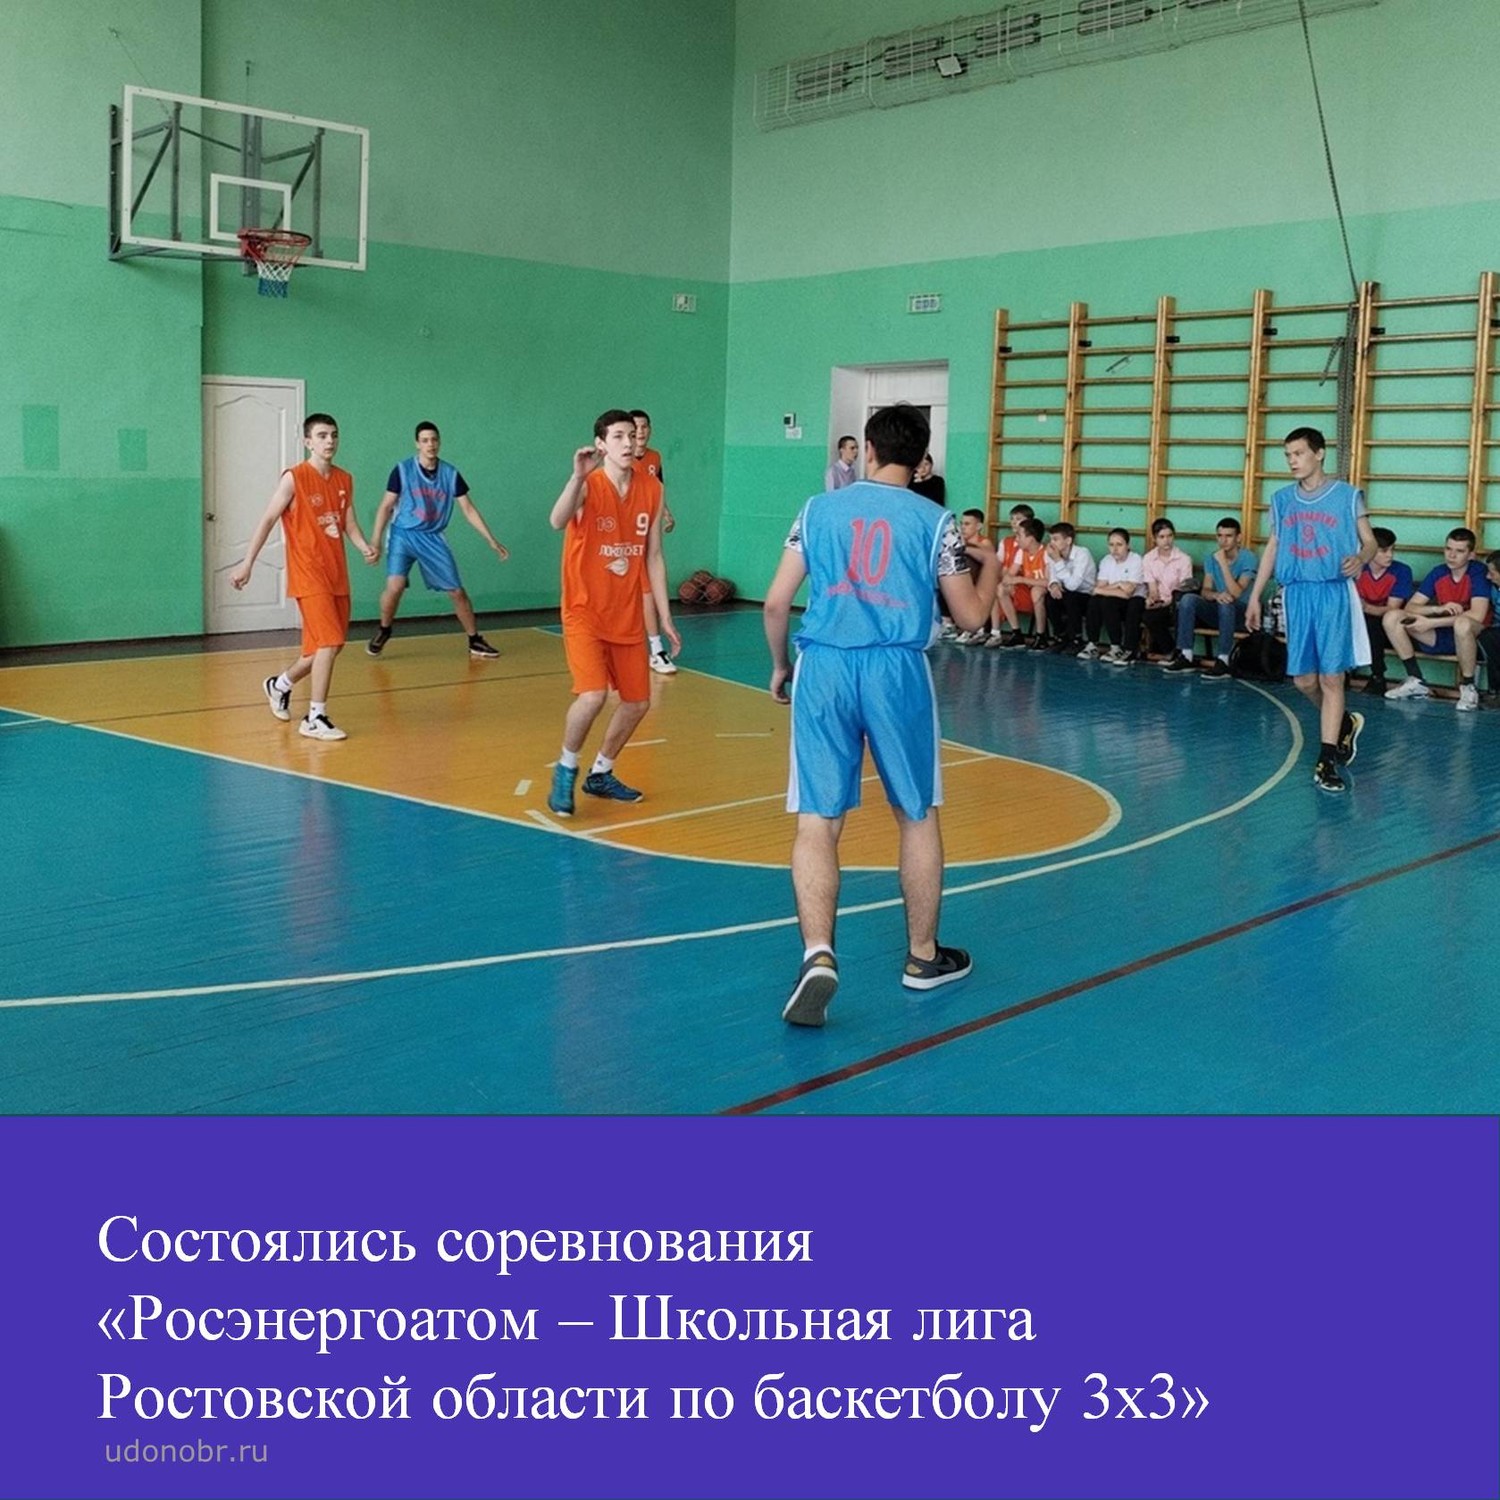 Состоялись соревнования «Росэнергоатом – Школьная лига Ростовской области по баскетболу 3х3»